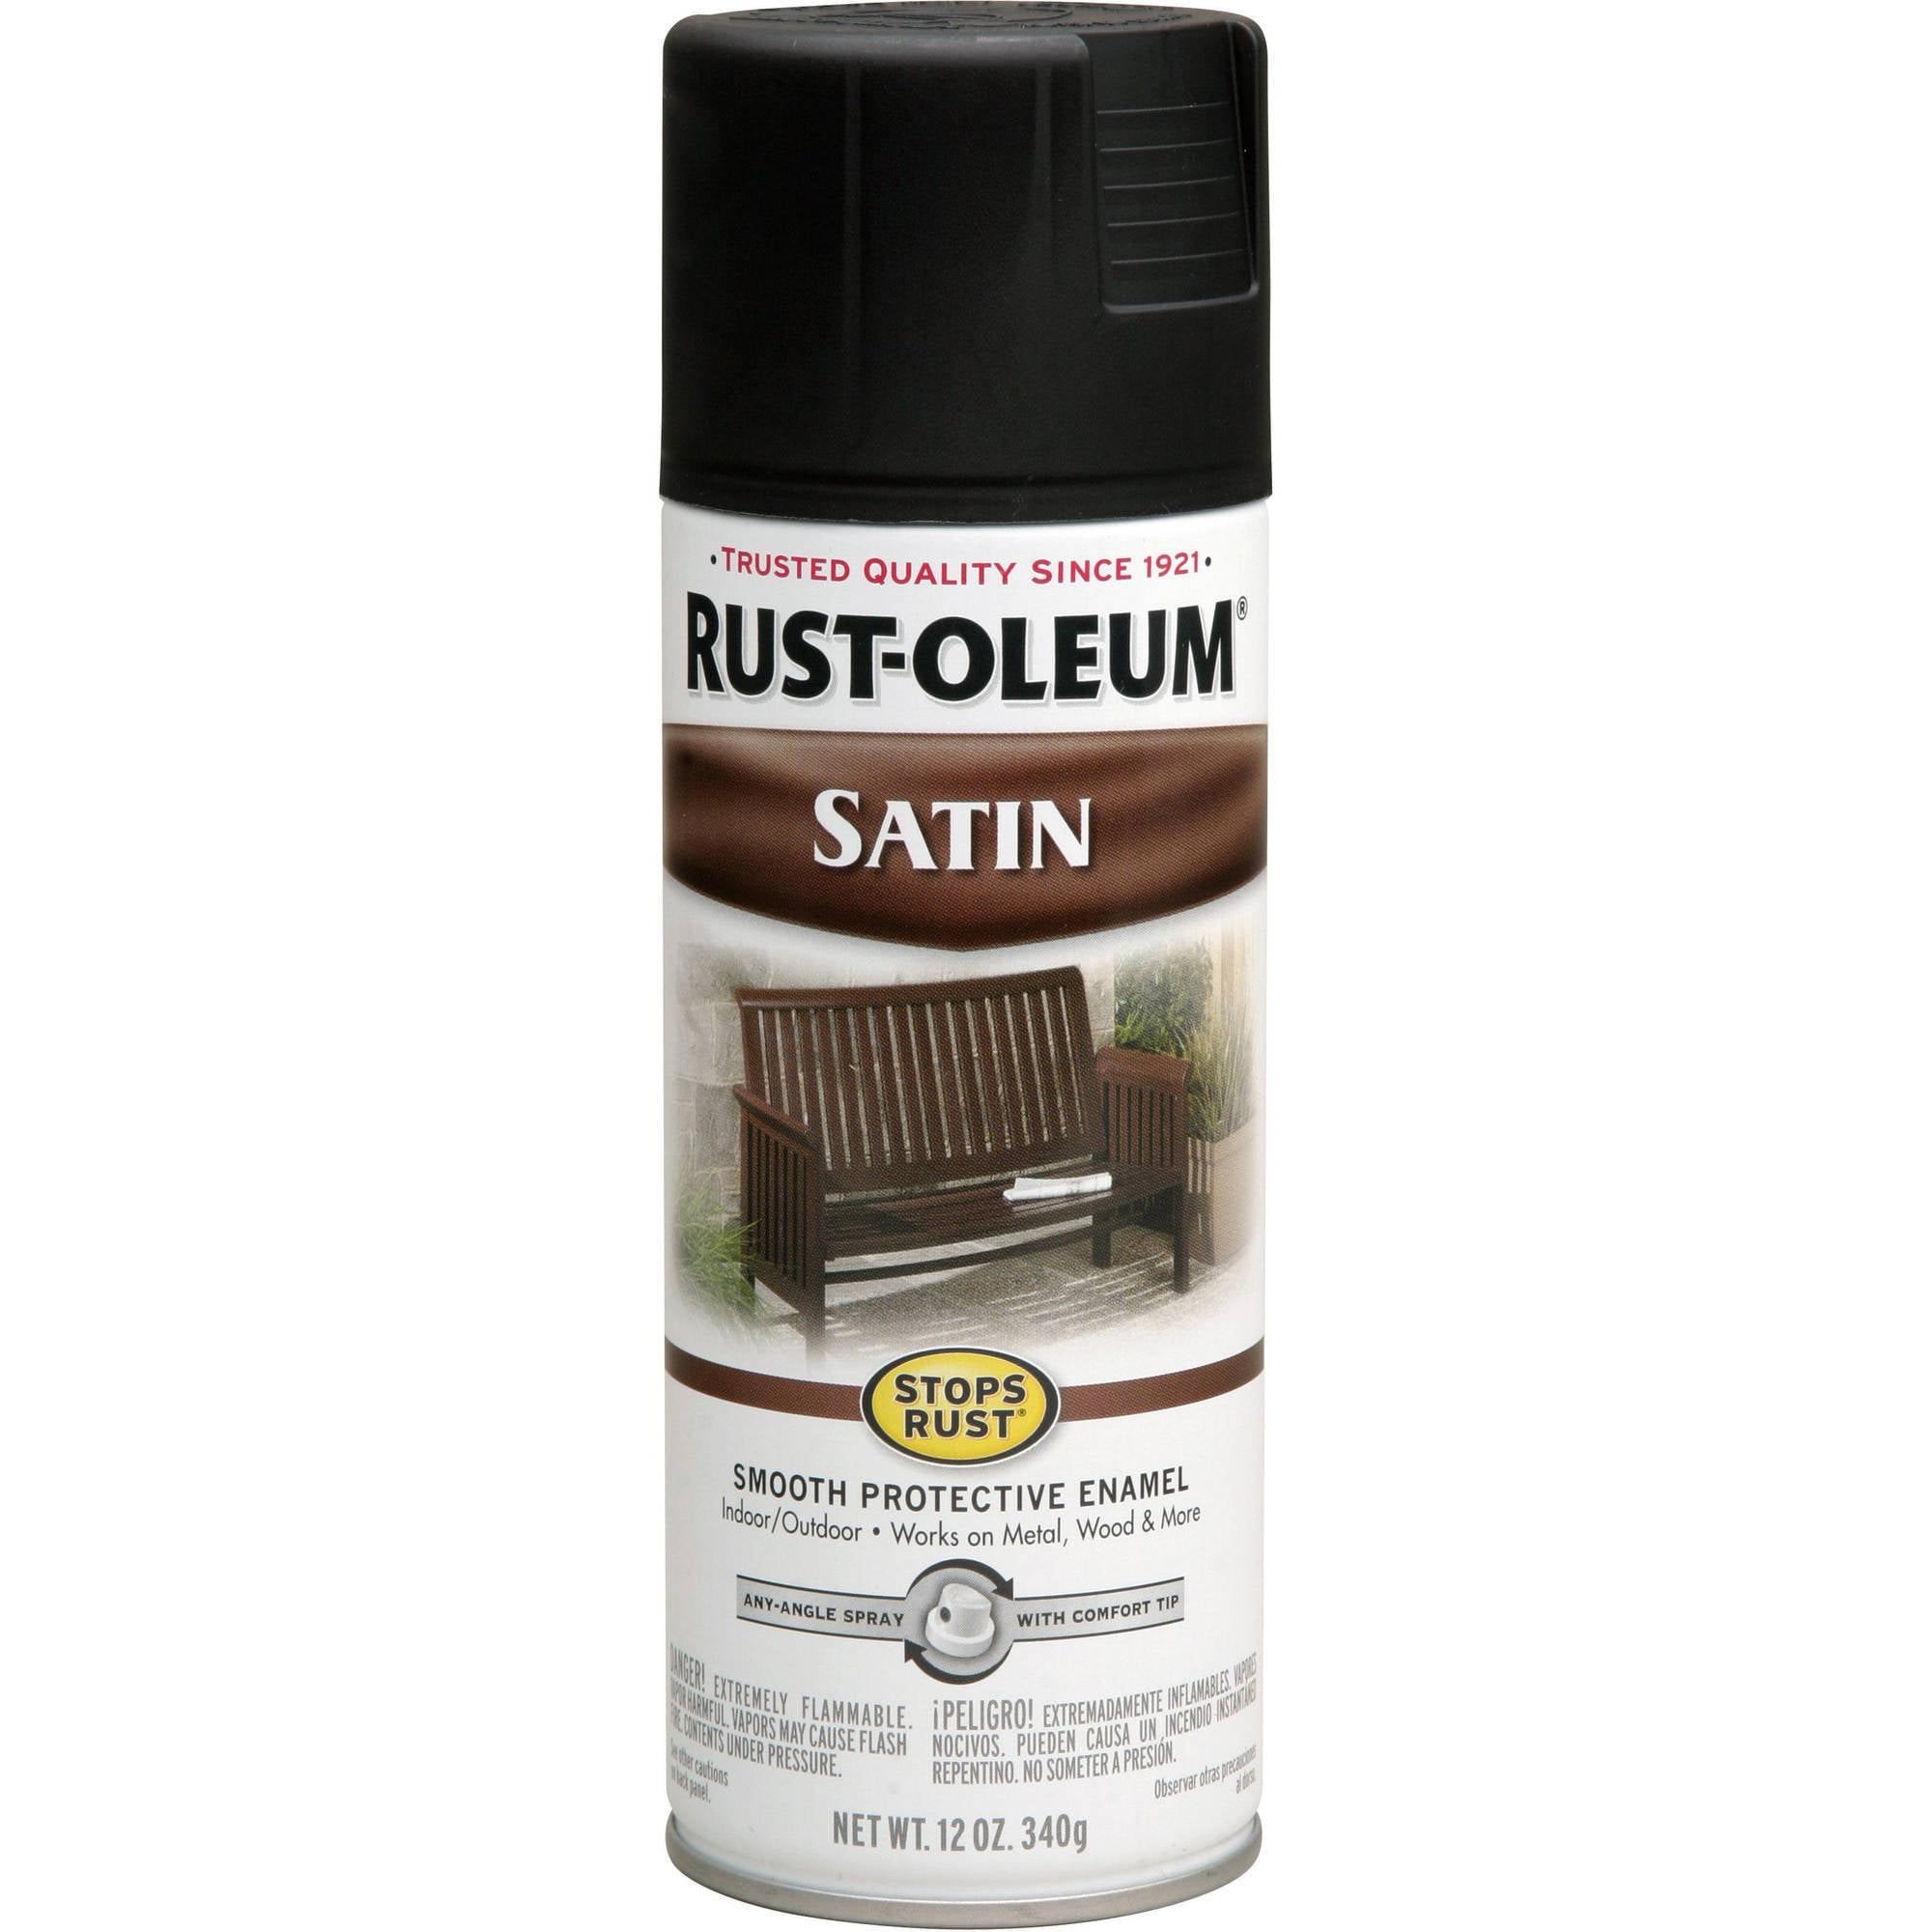 Rust Oleum Stops Rust Satin Spray Paint